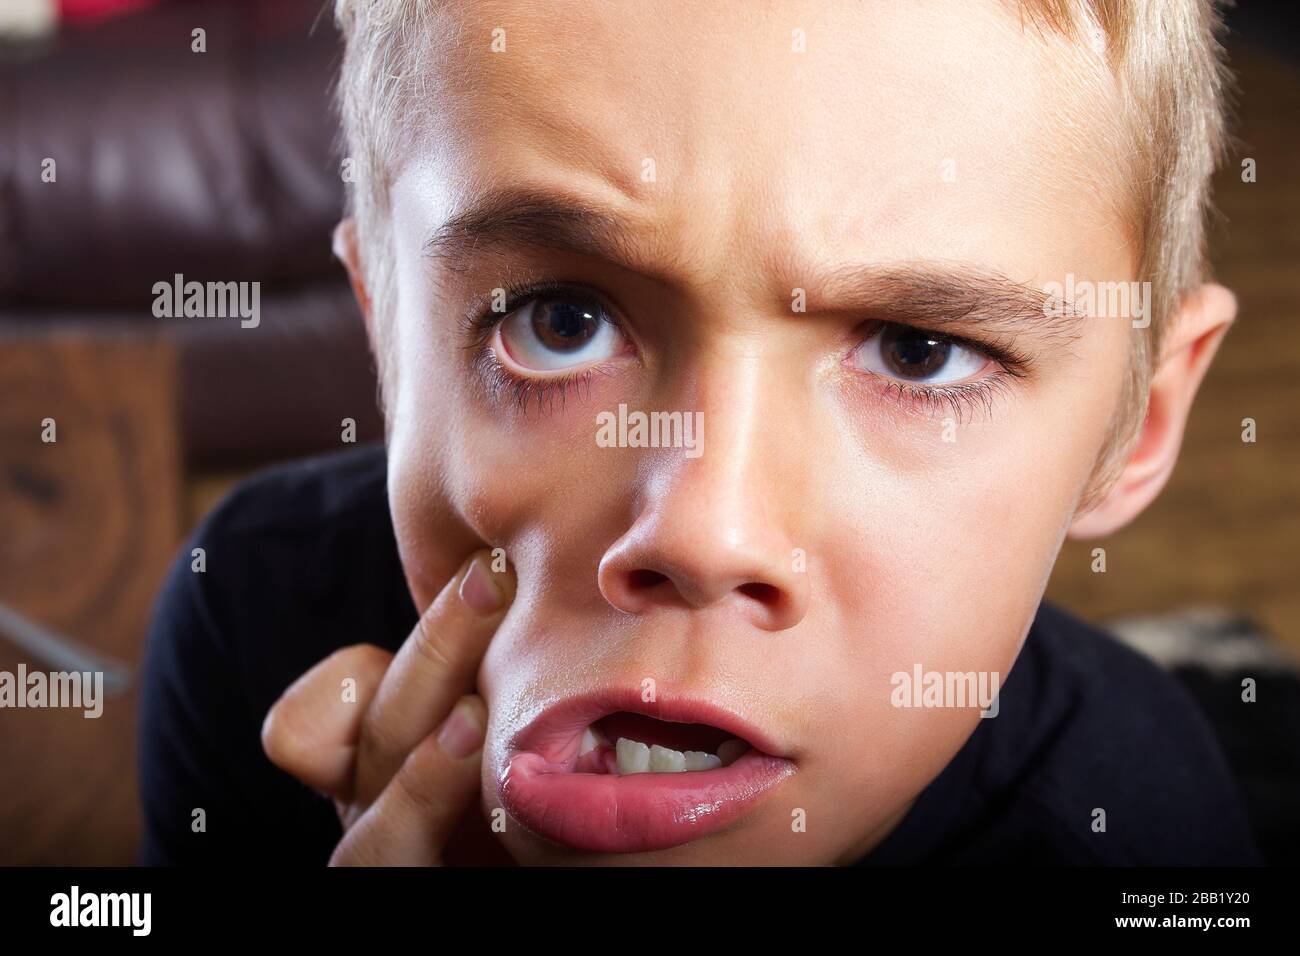 Una foto di closeup headshot di un bel ragazzo giovane con un'espressione facciale molto divertente e solo essere sciocco. Ha occhi marroni e capelli biondi. Foto Stock